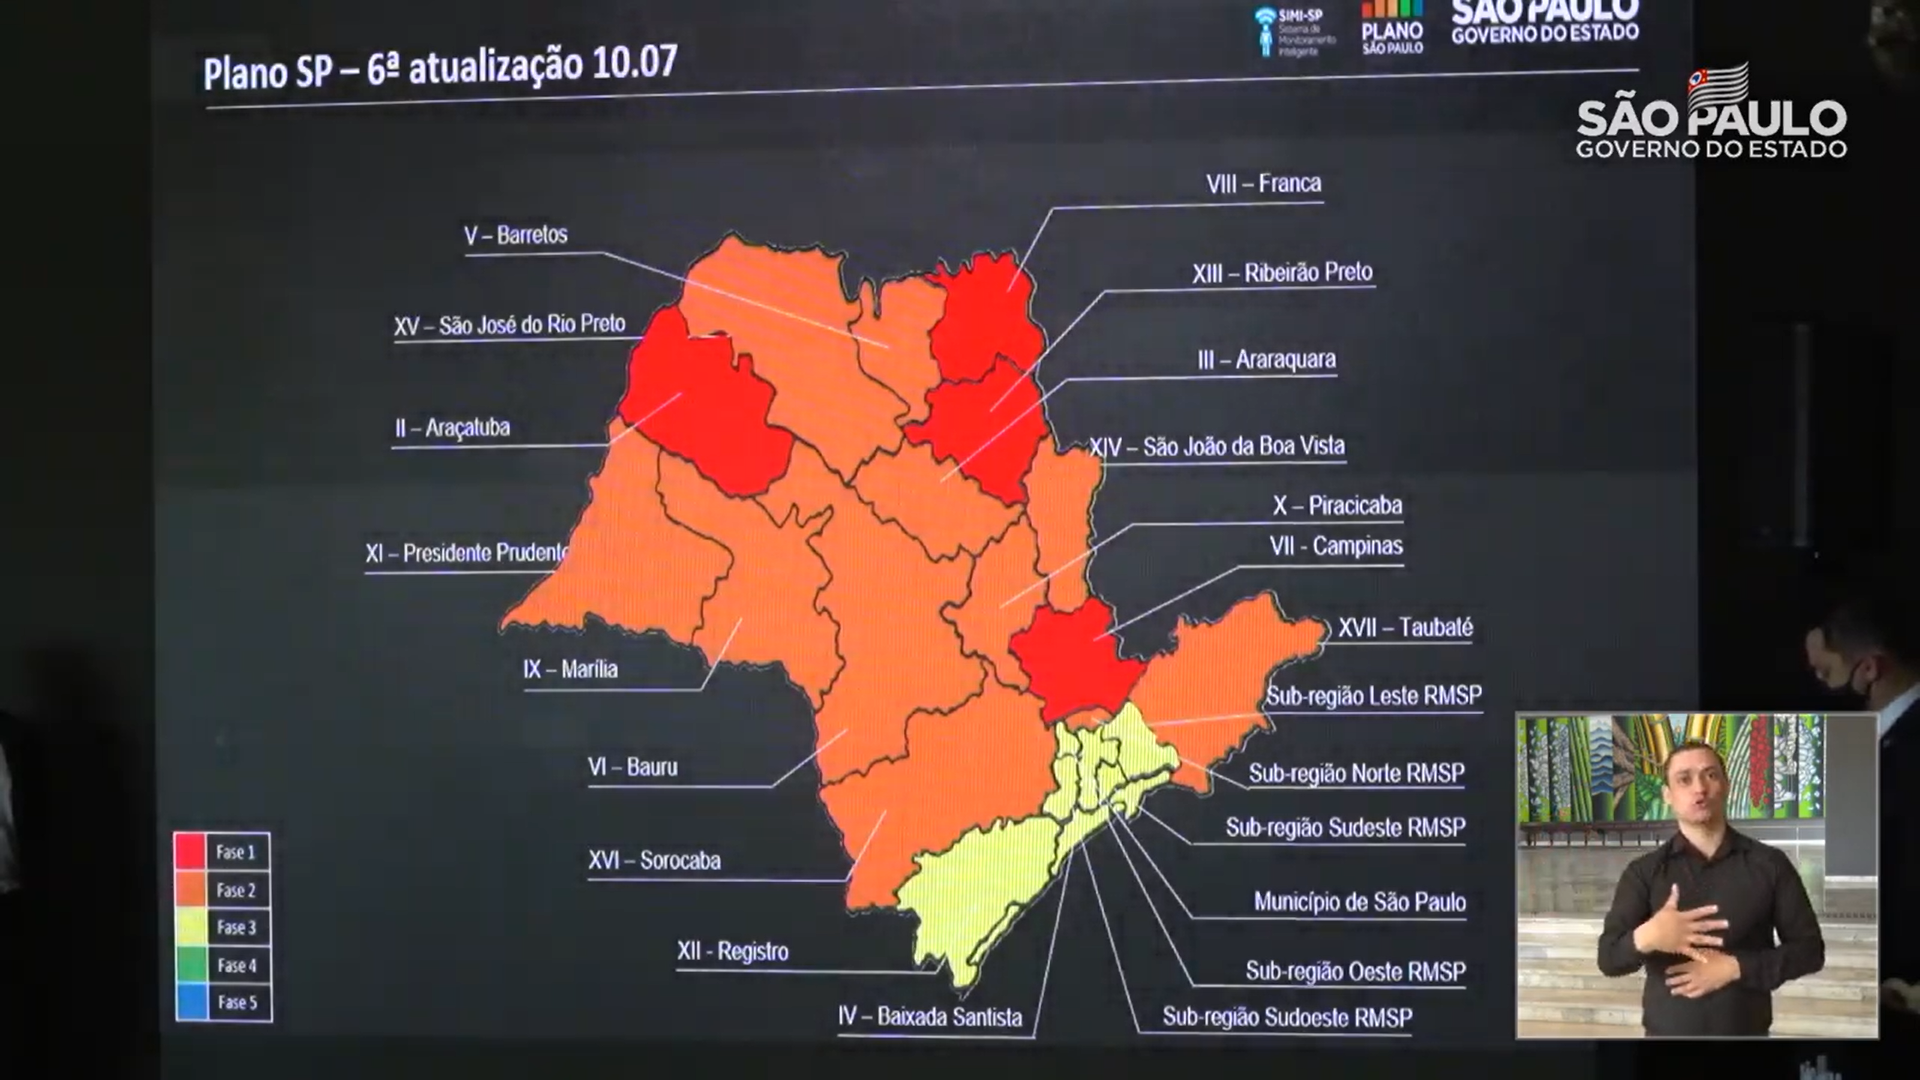 Plano São Paulo, atualizado em 10/7, mostra novas regiões na fase 3 (amarela)